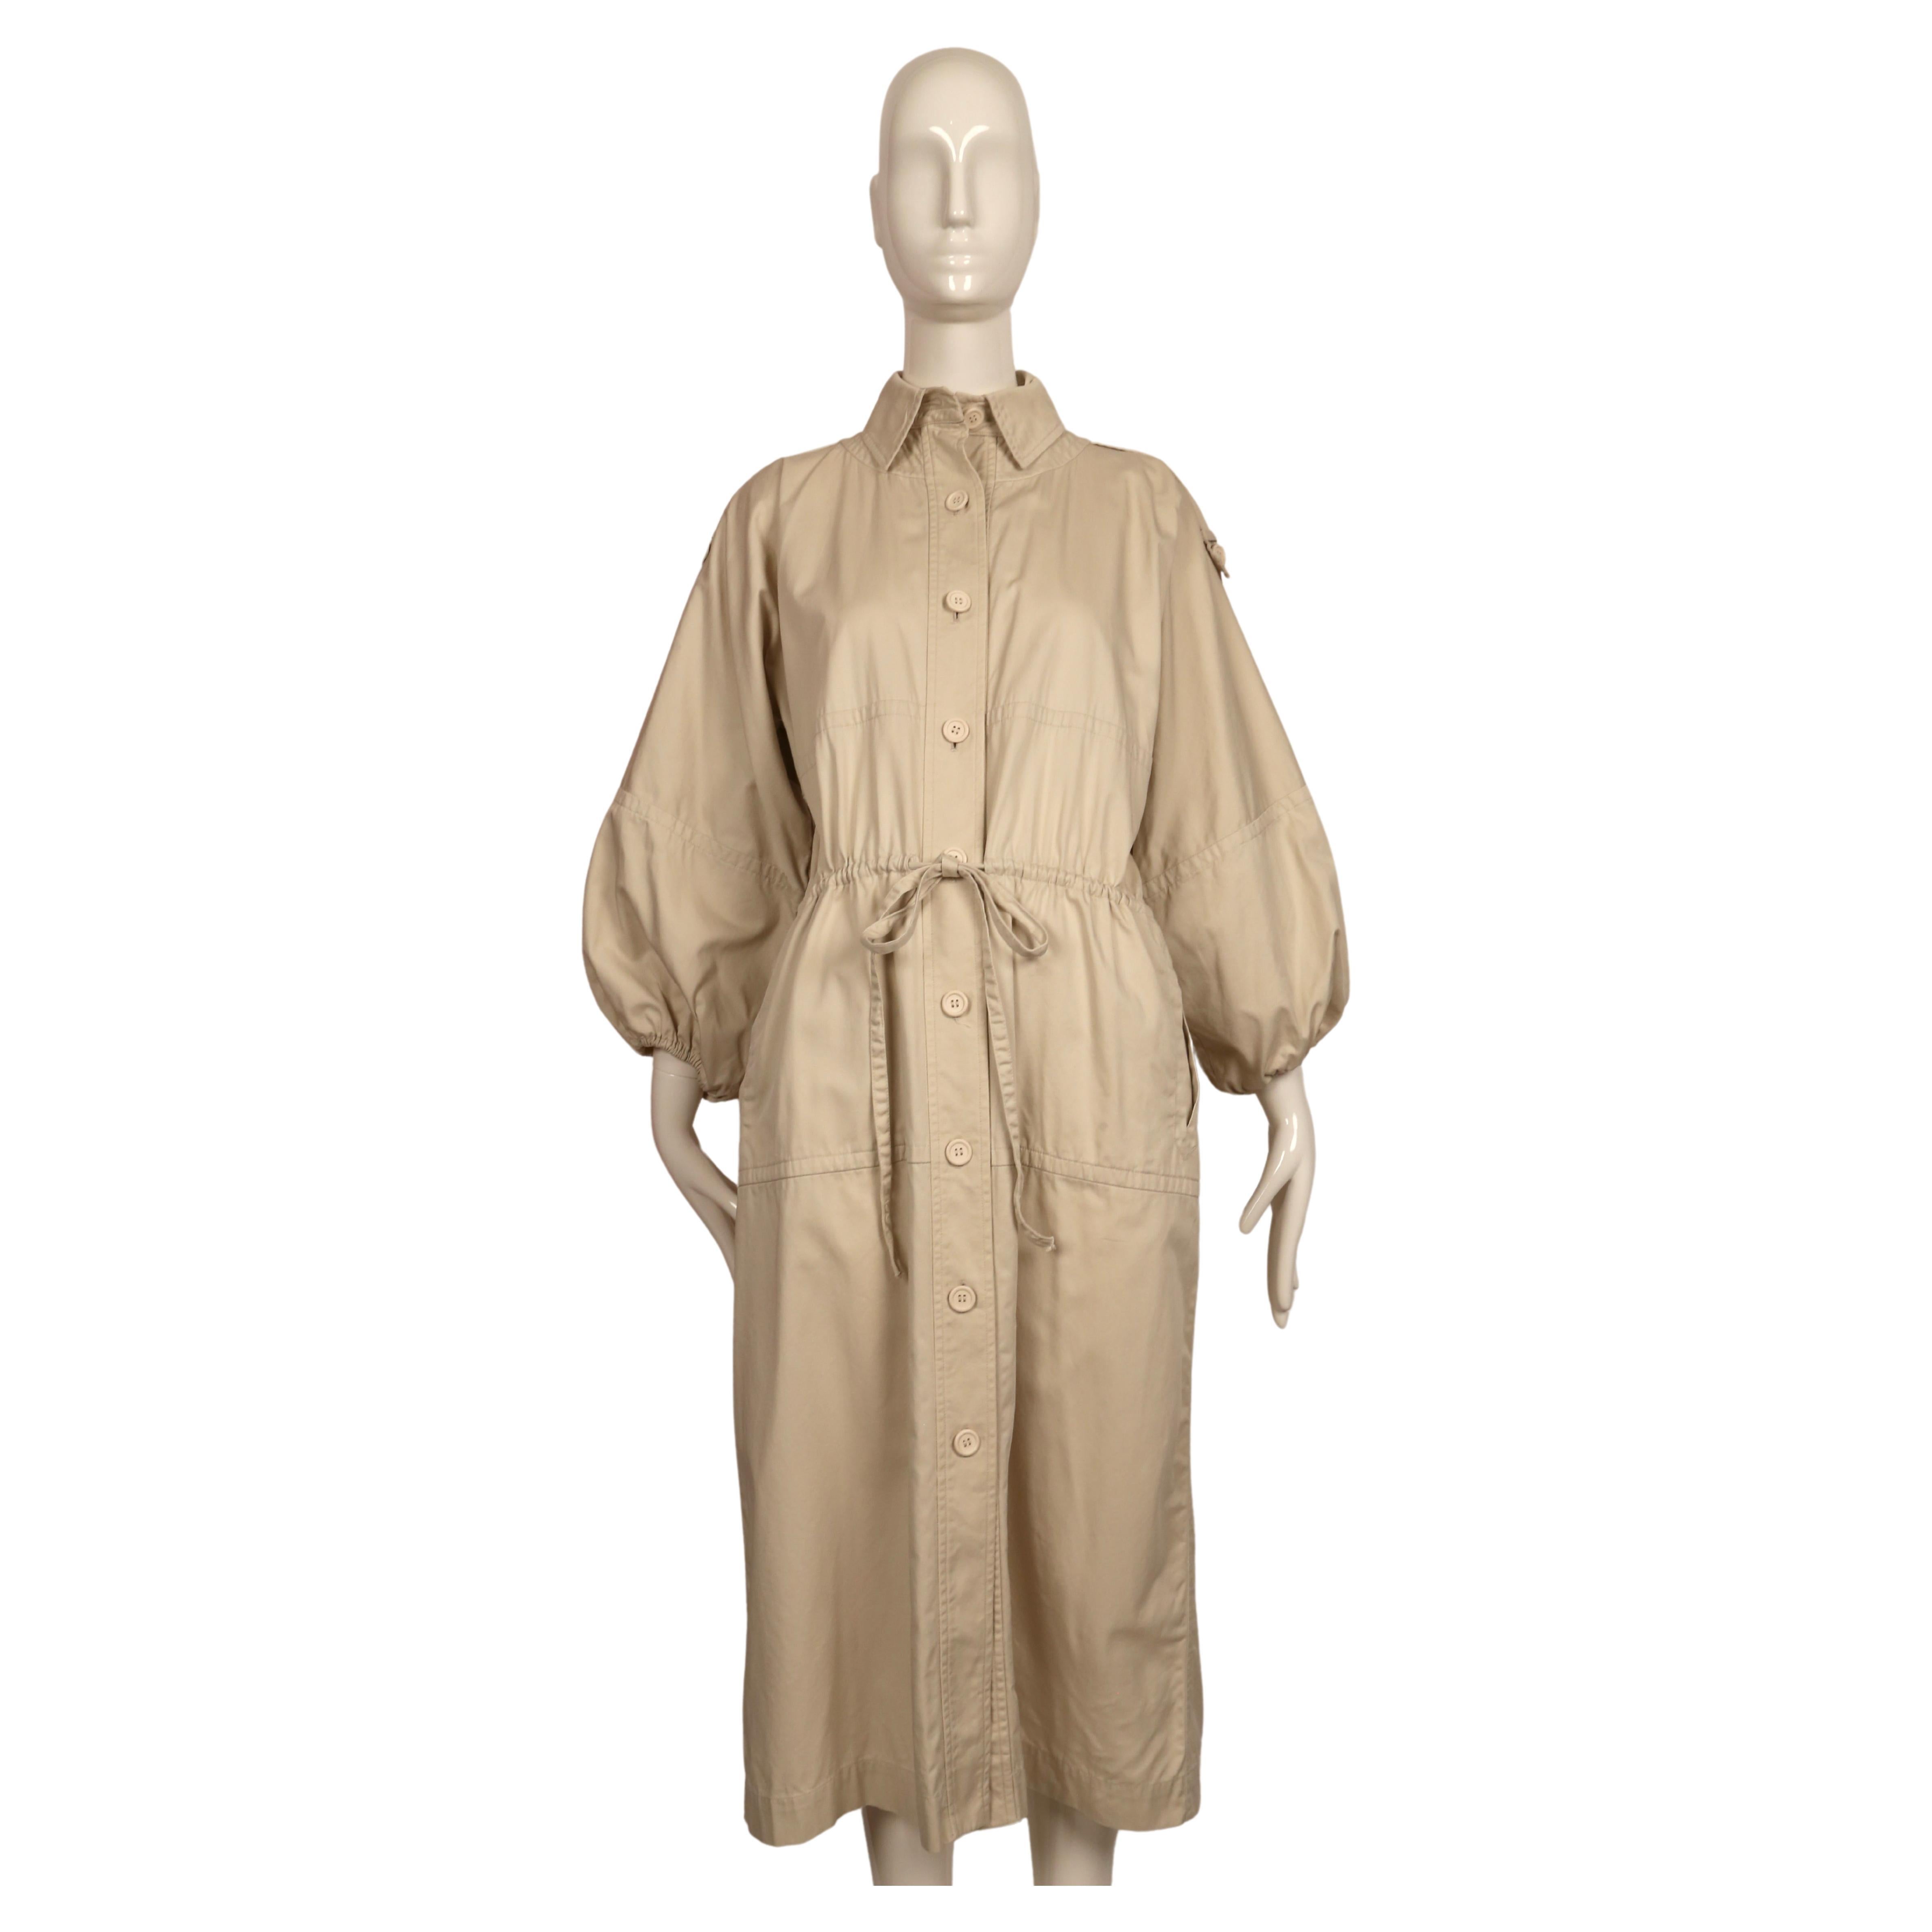 Sehr seltener hellbrauner Trenchcoat aus Baumwollköper, entworfen von Yves Saint Laurent, wie er auf dem Laufsteg im Frühjahr 1978 in verschiedenen Farben zu sehen war. Dieser Mantel ist mit der französischen Größe 36 gekennzeichnet, passt aber